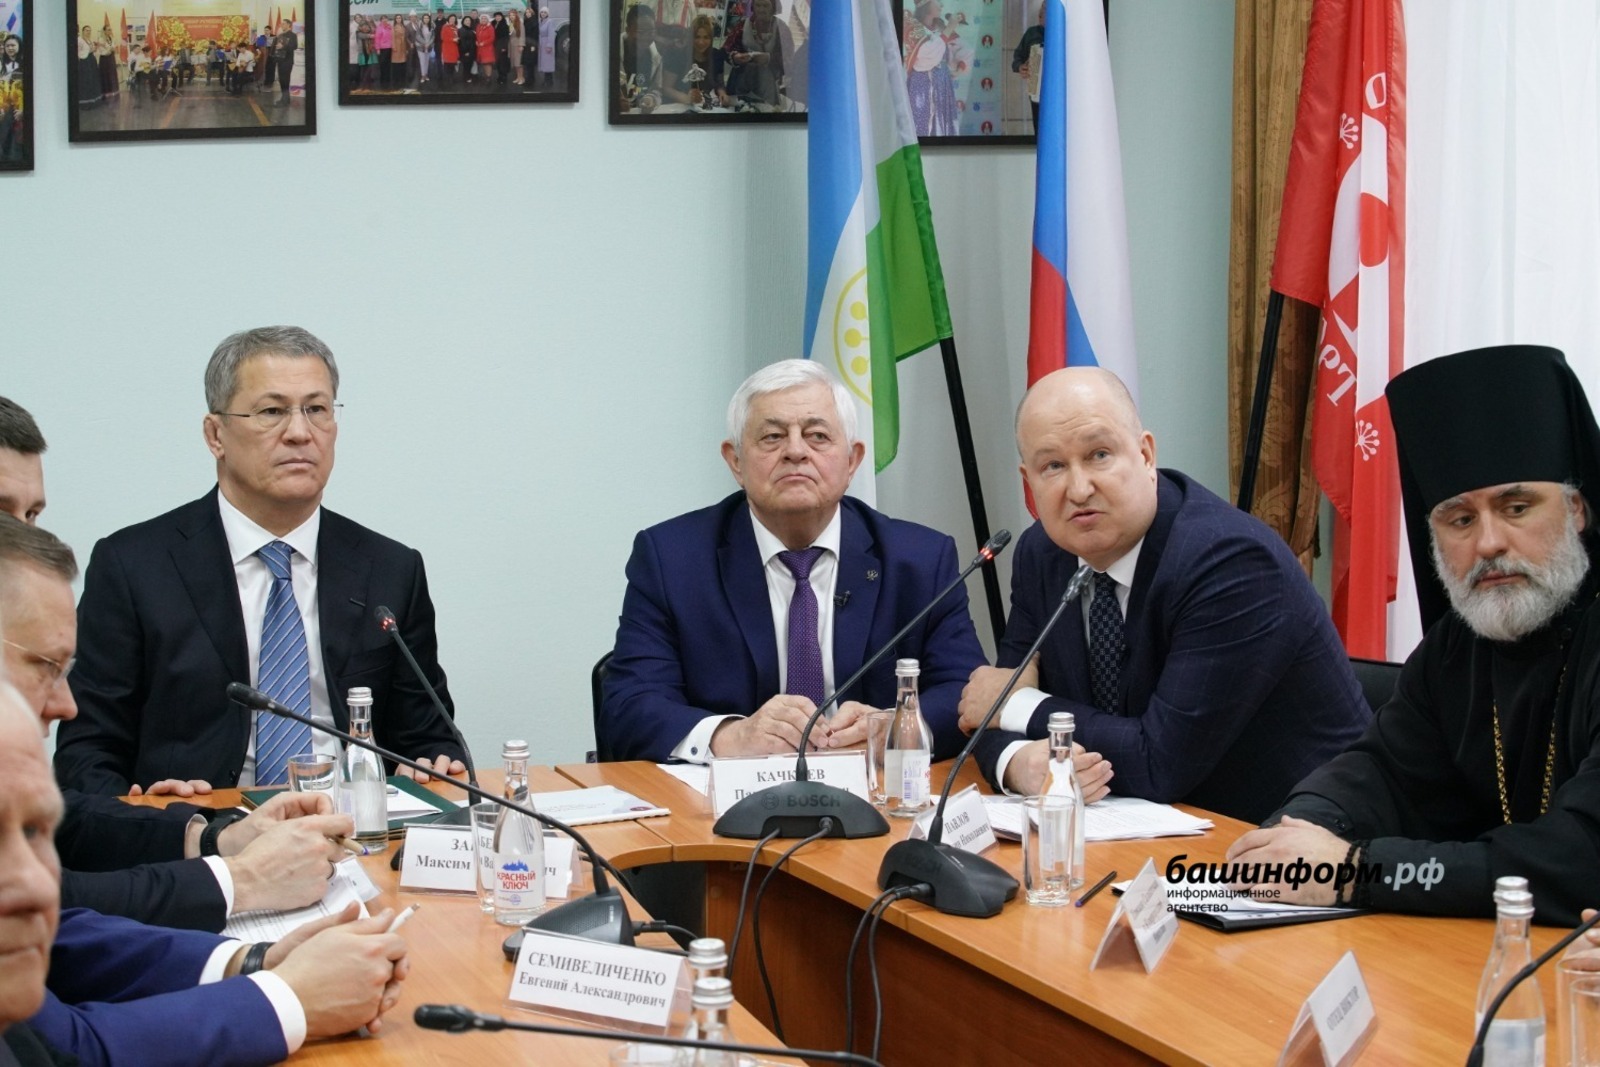 Глава Башкирии Радий Хабиров высказался о дружбе и межнациональном согласии